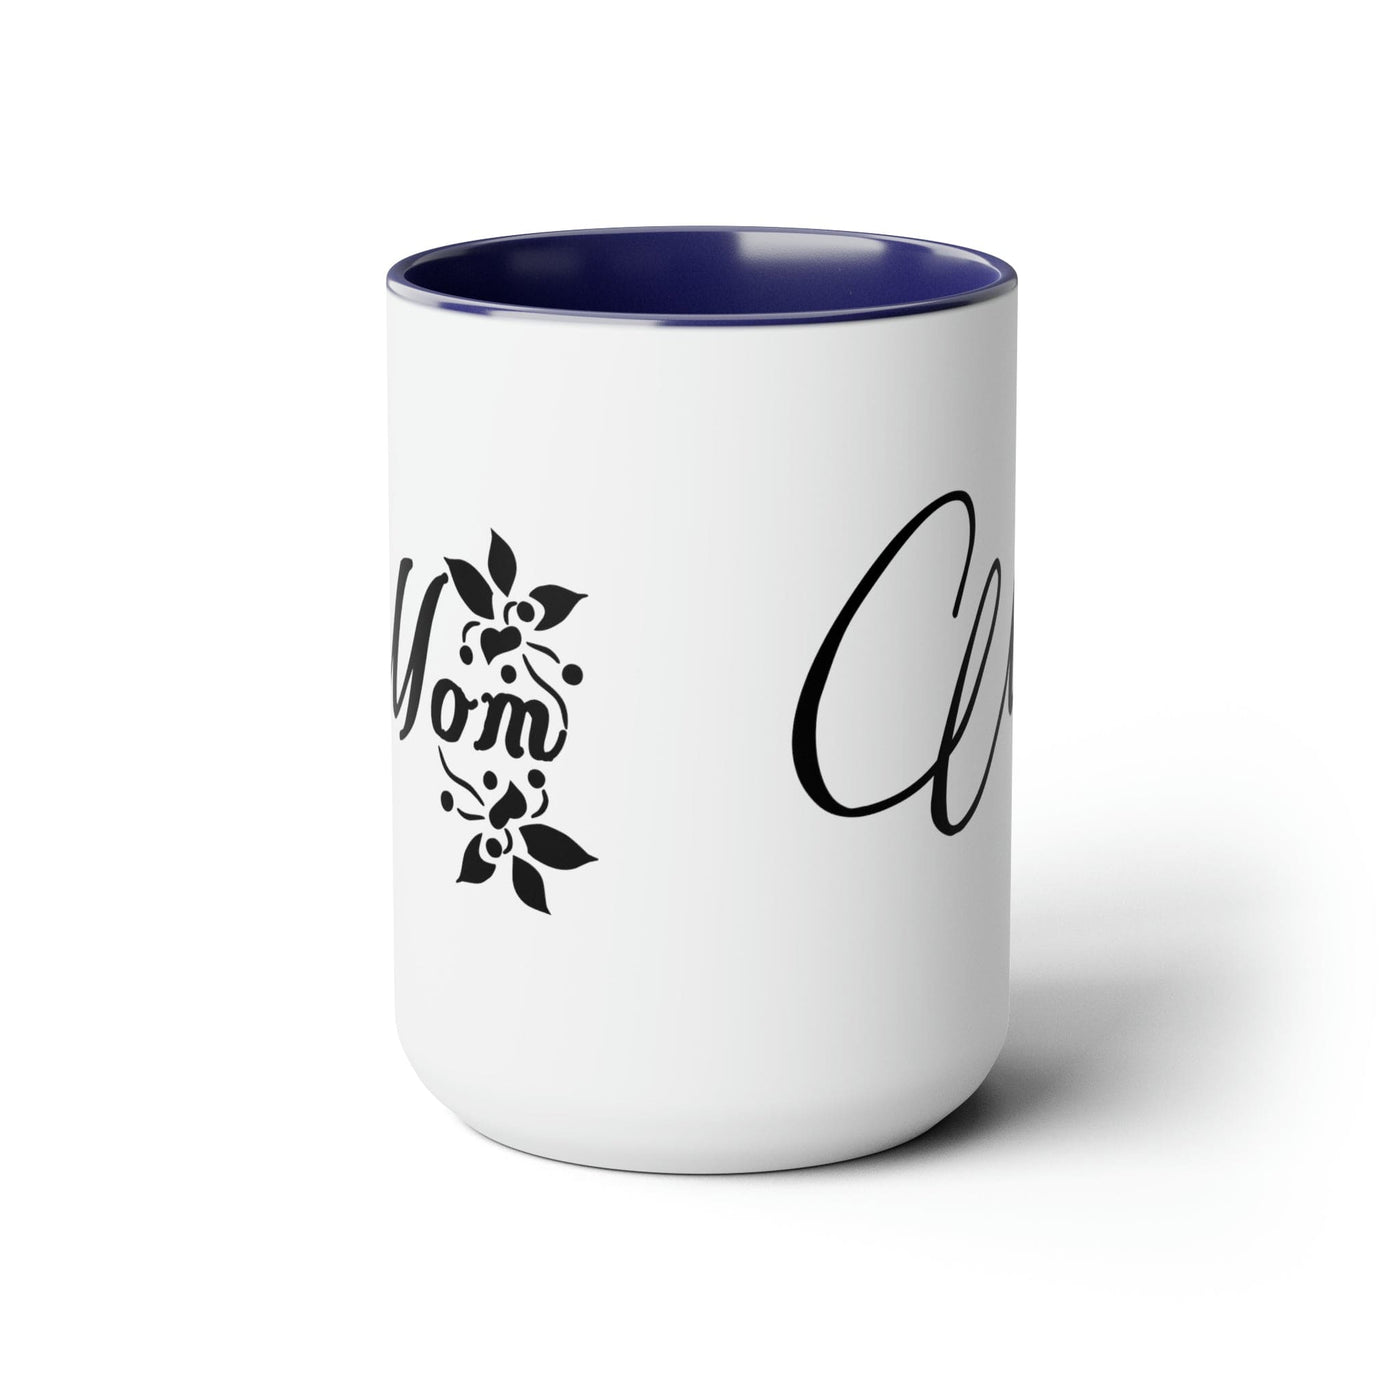 Accent Ceramic Coffee Mug 15oz - Mom Appreciation For Mothers - Decorative